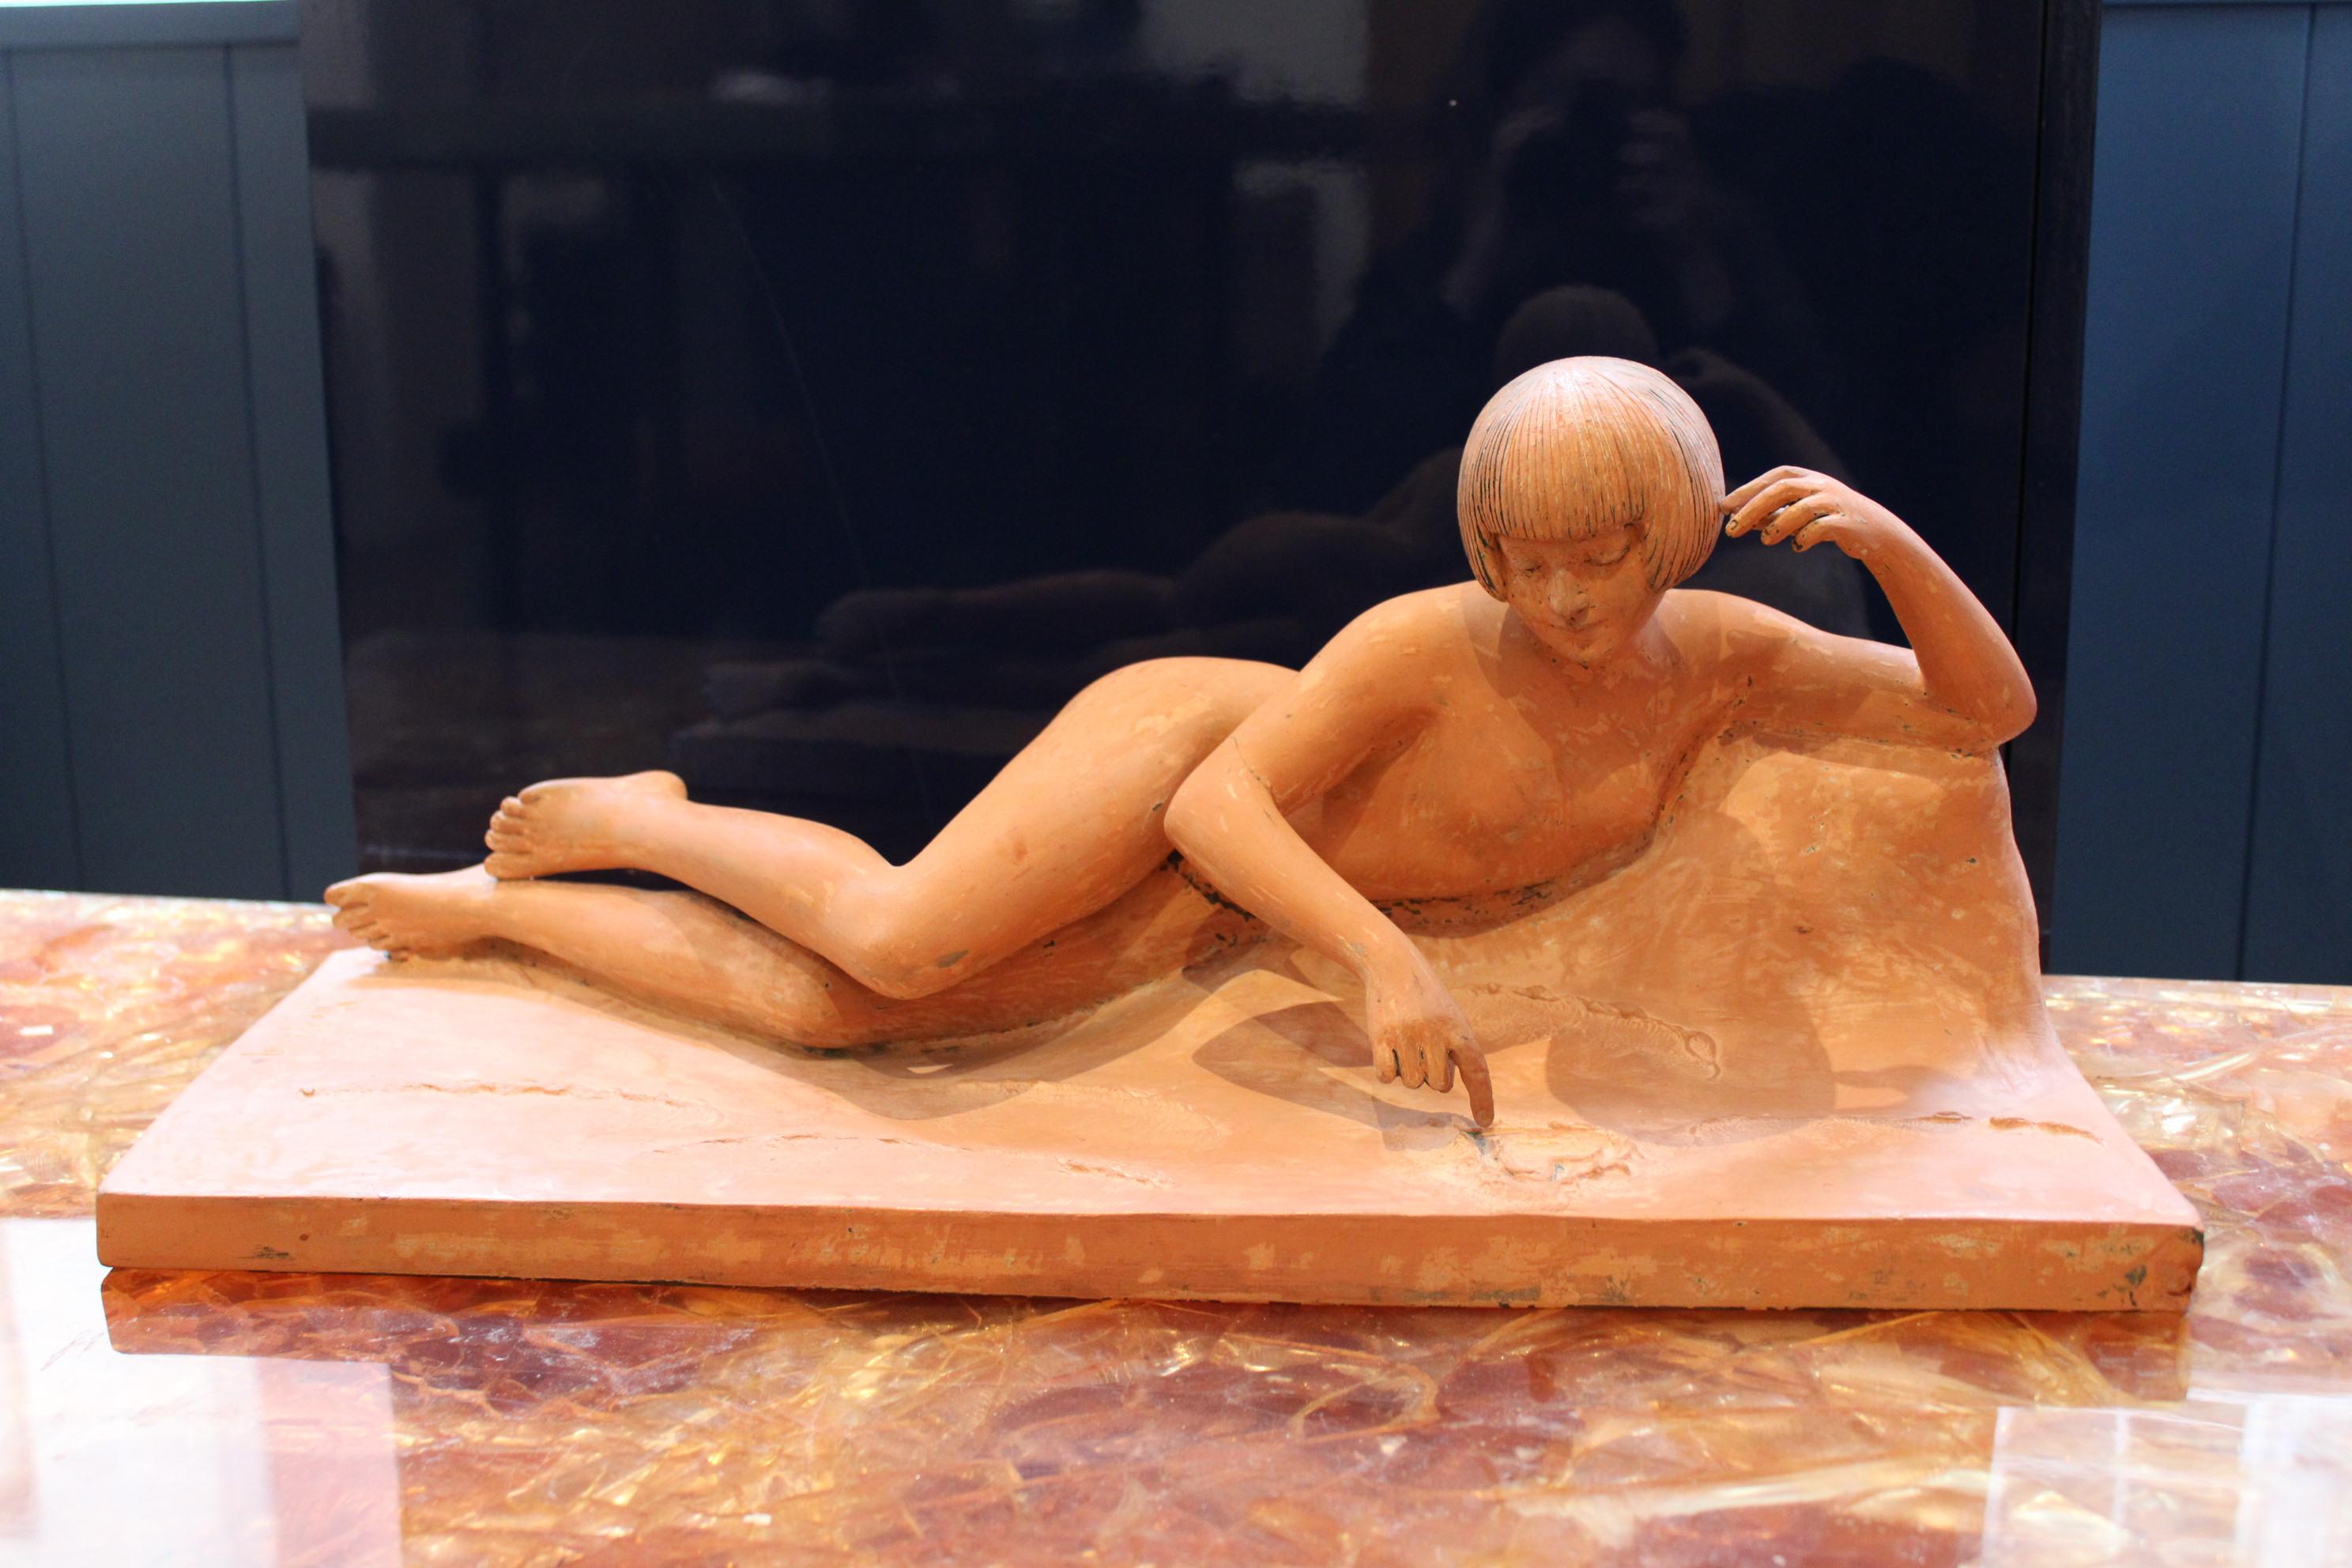 Terrakotta-Frauenakt, Skulptur von George Maxim (1885-1940)
Unterzeichnet Geo Maxim.
Anfang des 20. Jahrhunderts, Frankreich

Risswunde am rechten Arm.